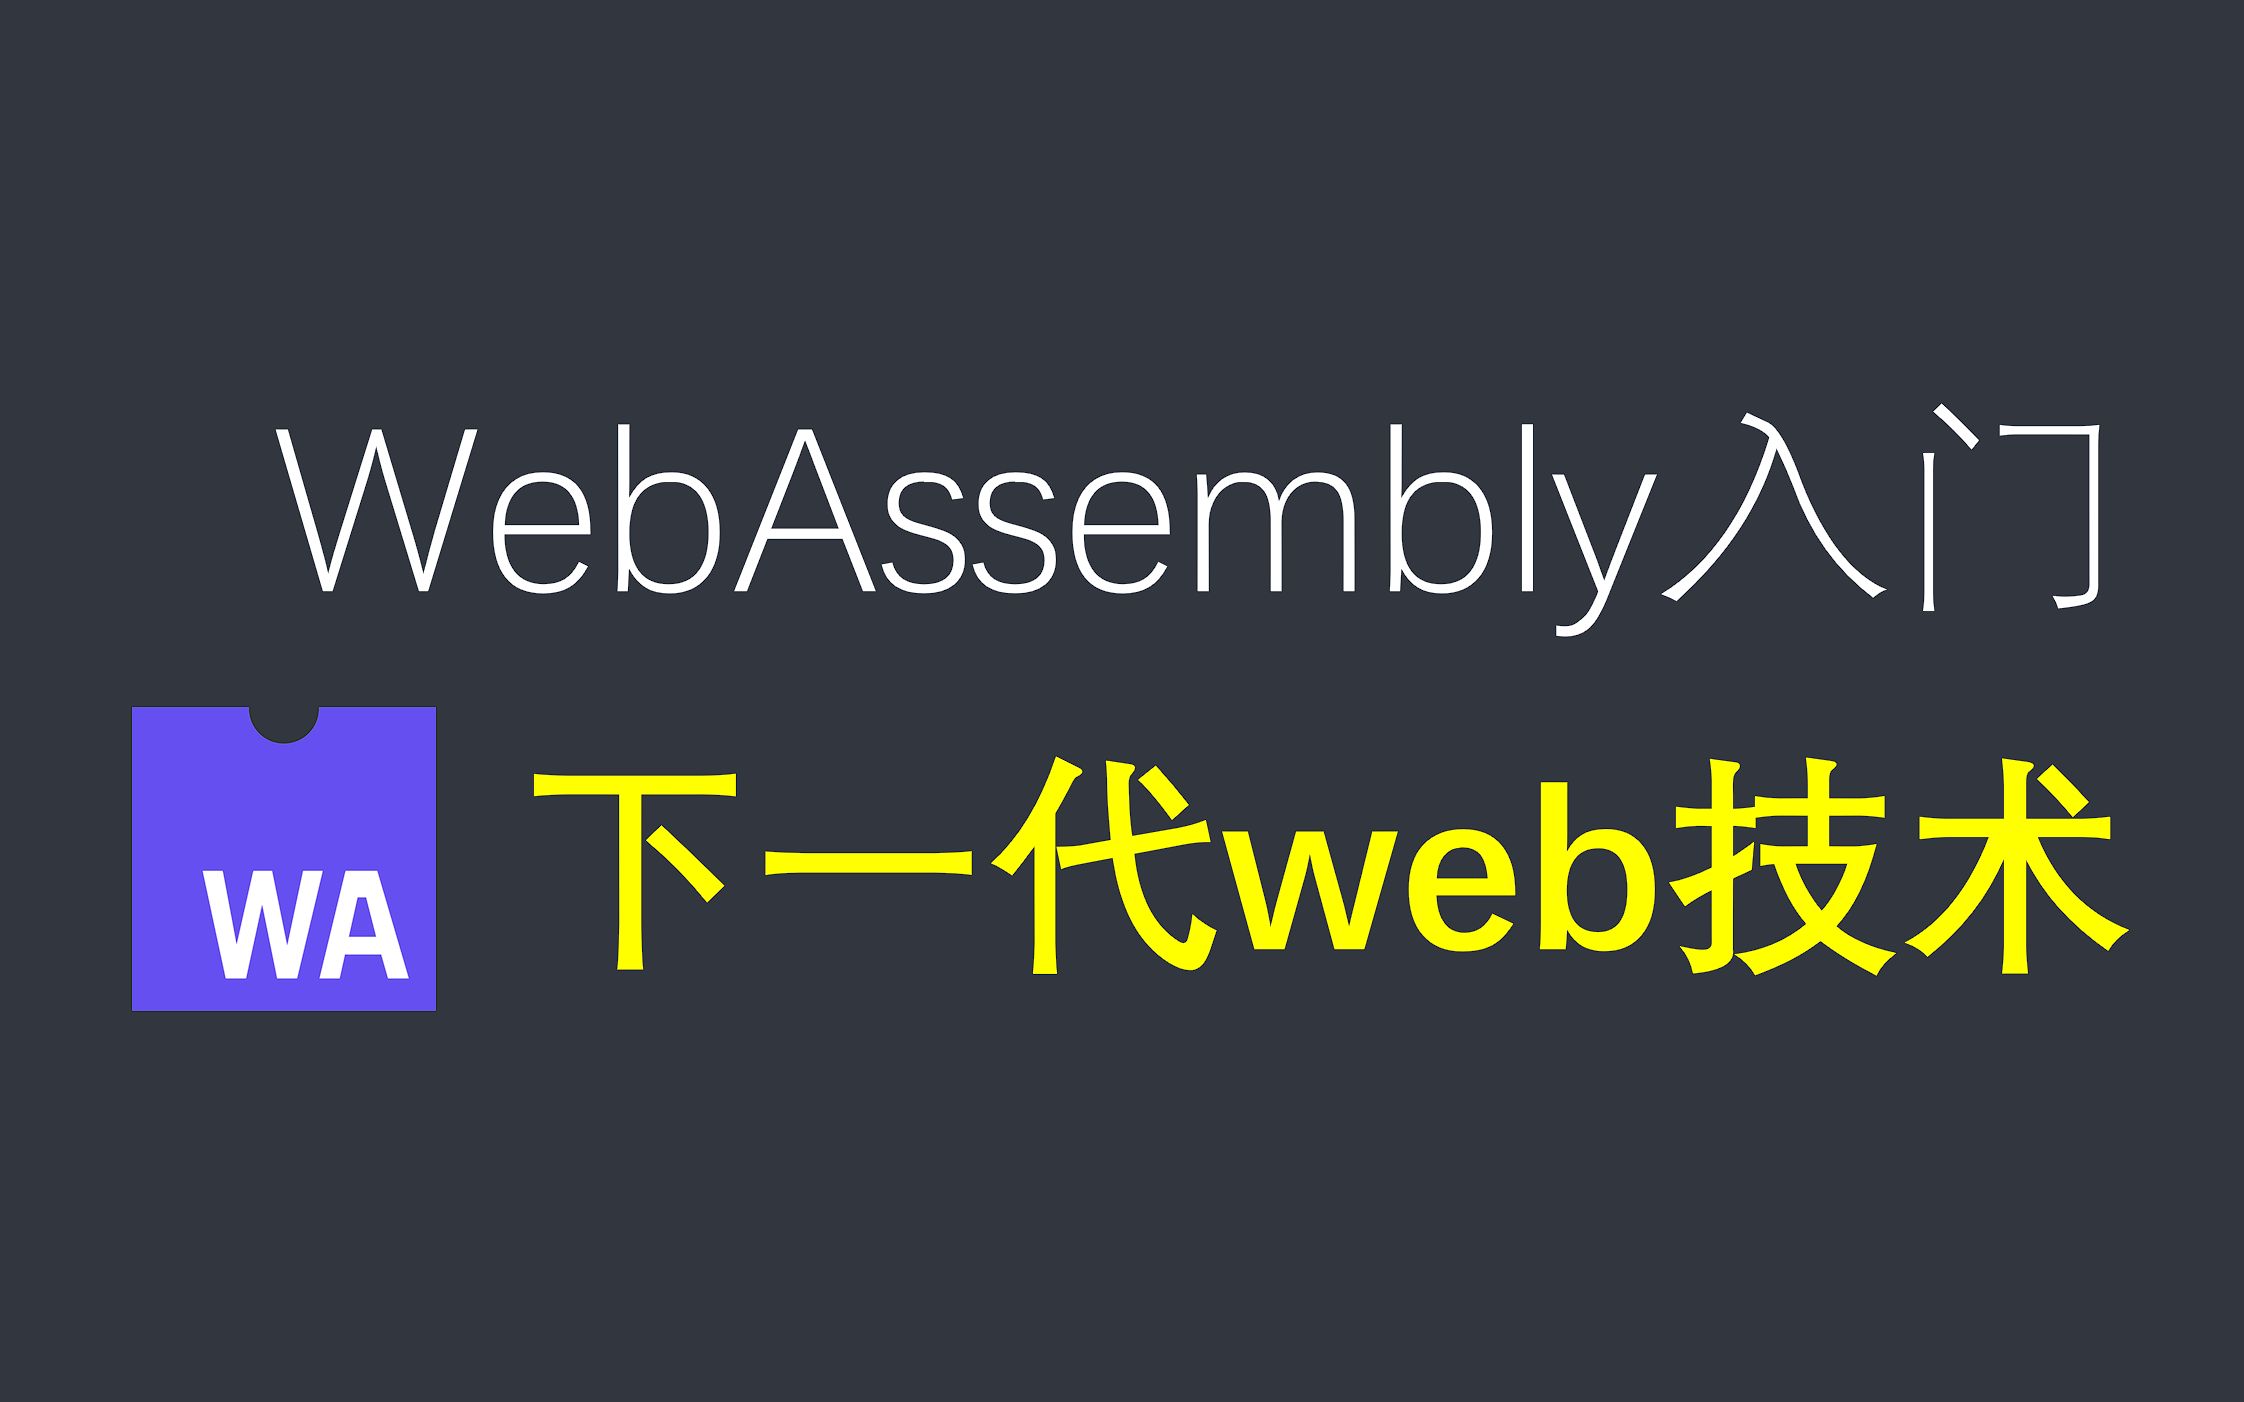 【代码实战】下一代web技术，WebAssembly入门教程，让我们初步认识一下